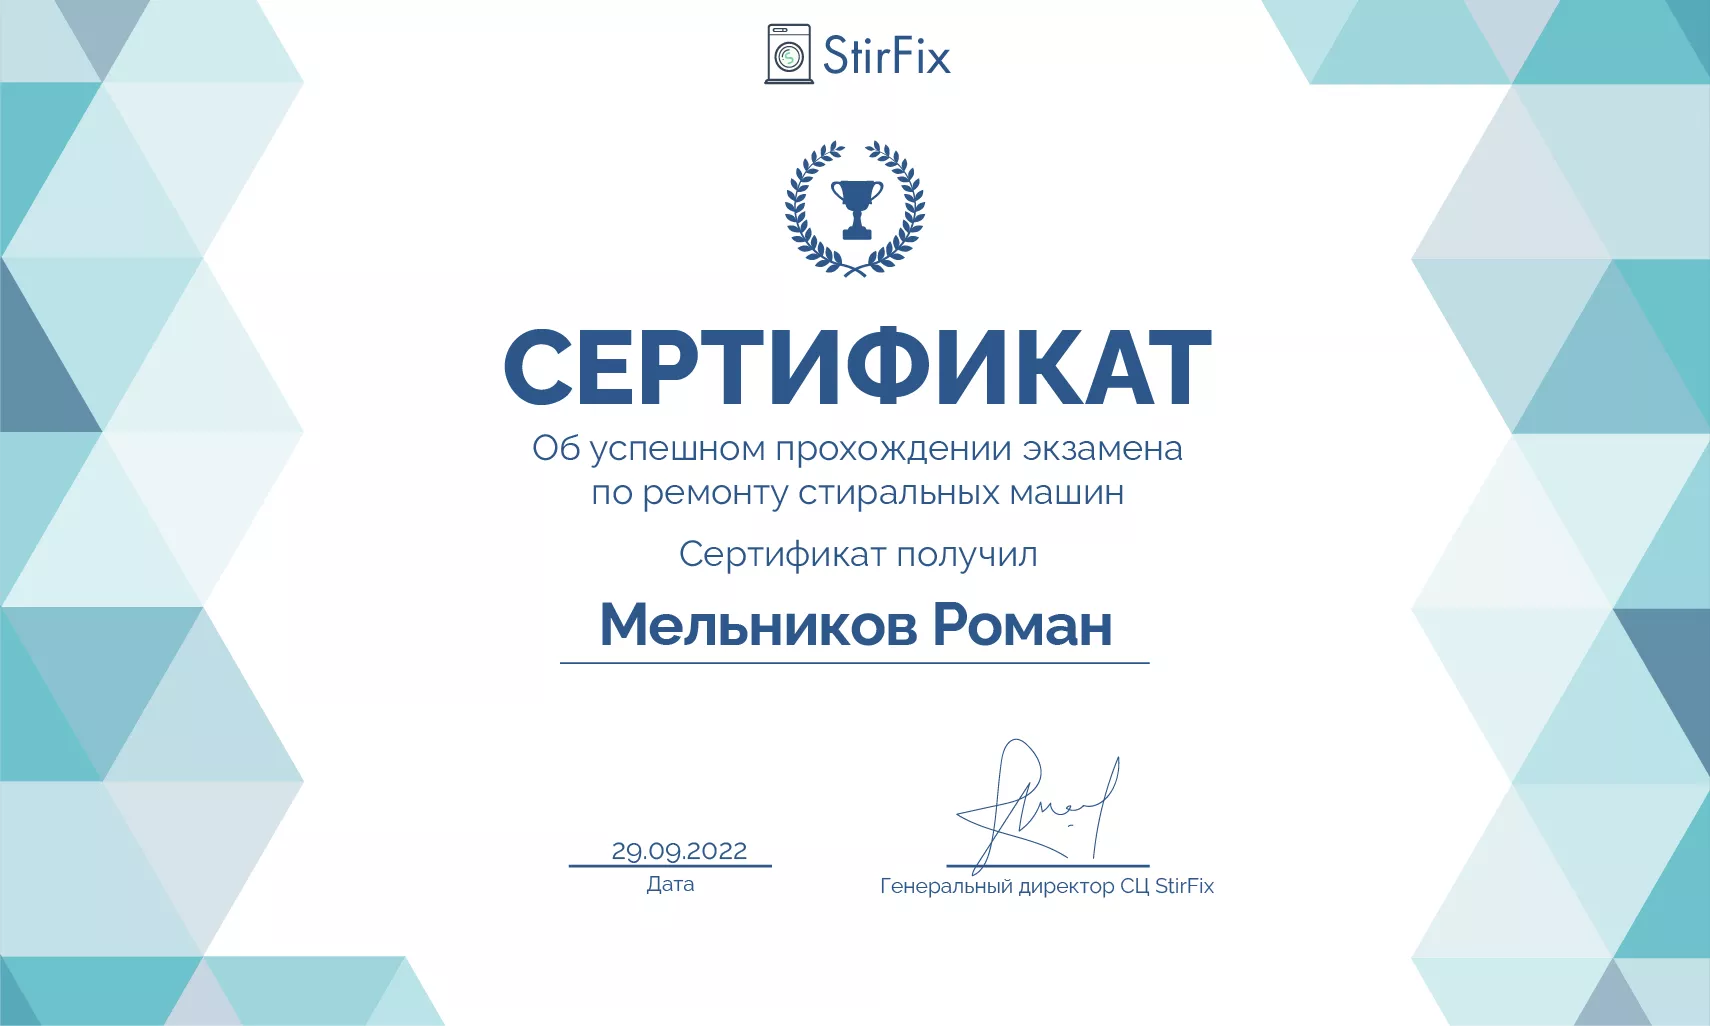 Мельников Роман сертификат мастера по ремонту стиральных машин